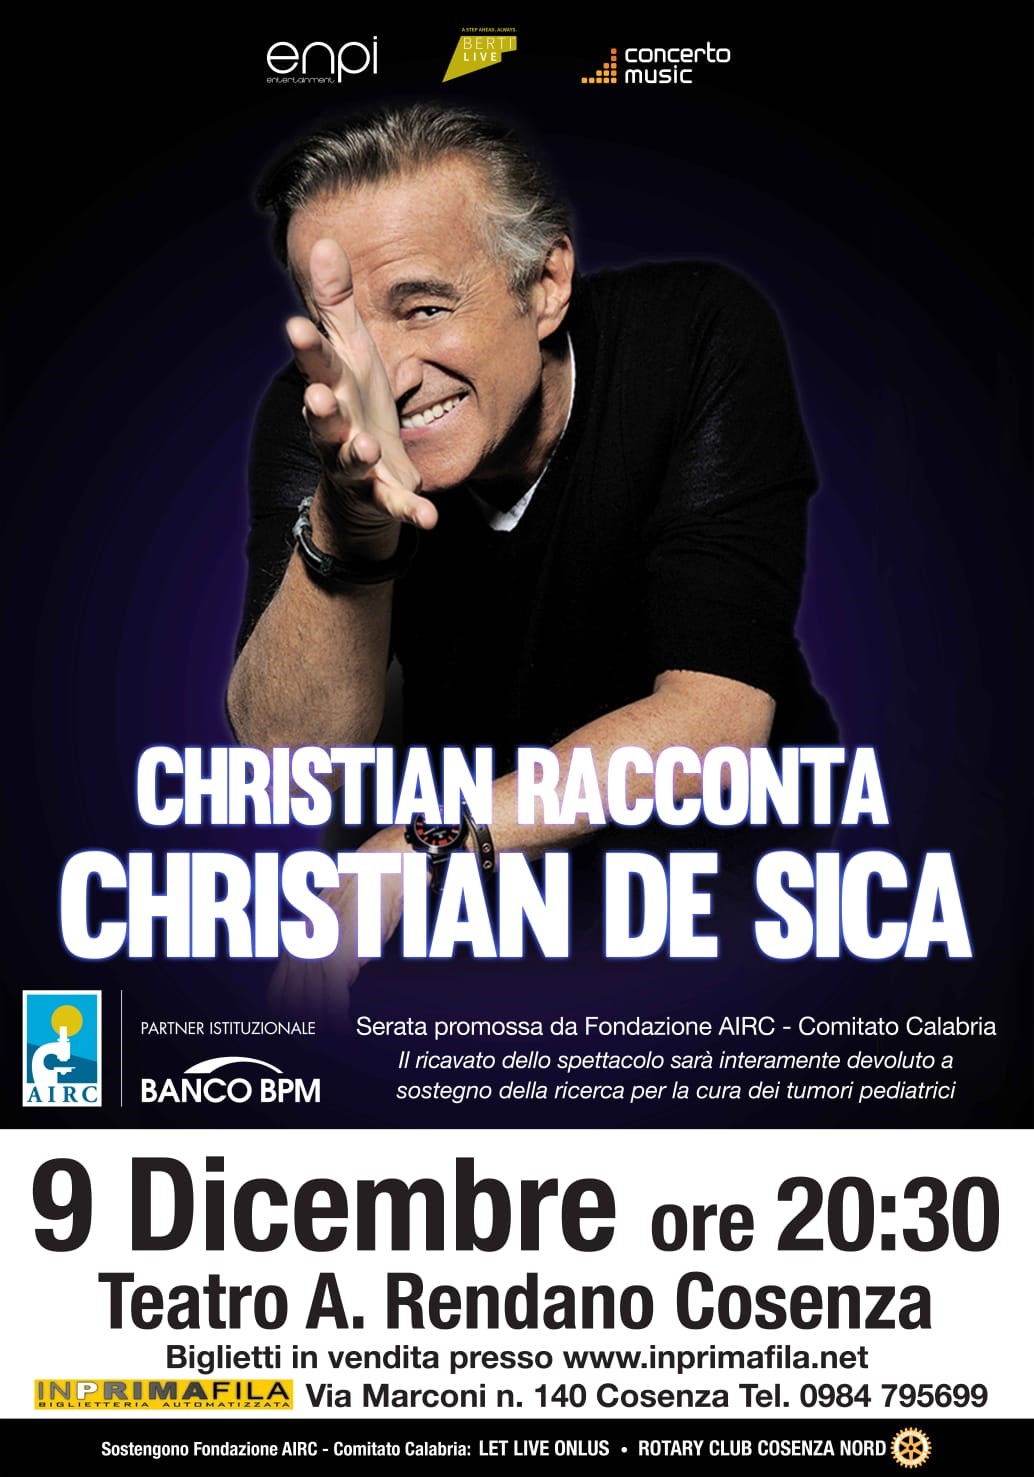 Cosenza: ultimi biglietti disponibili per lo spettacolo di Christian De Sica - Stretto web